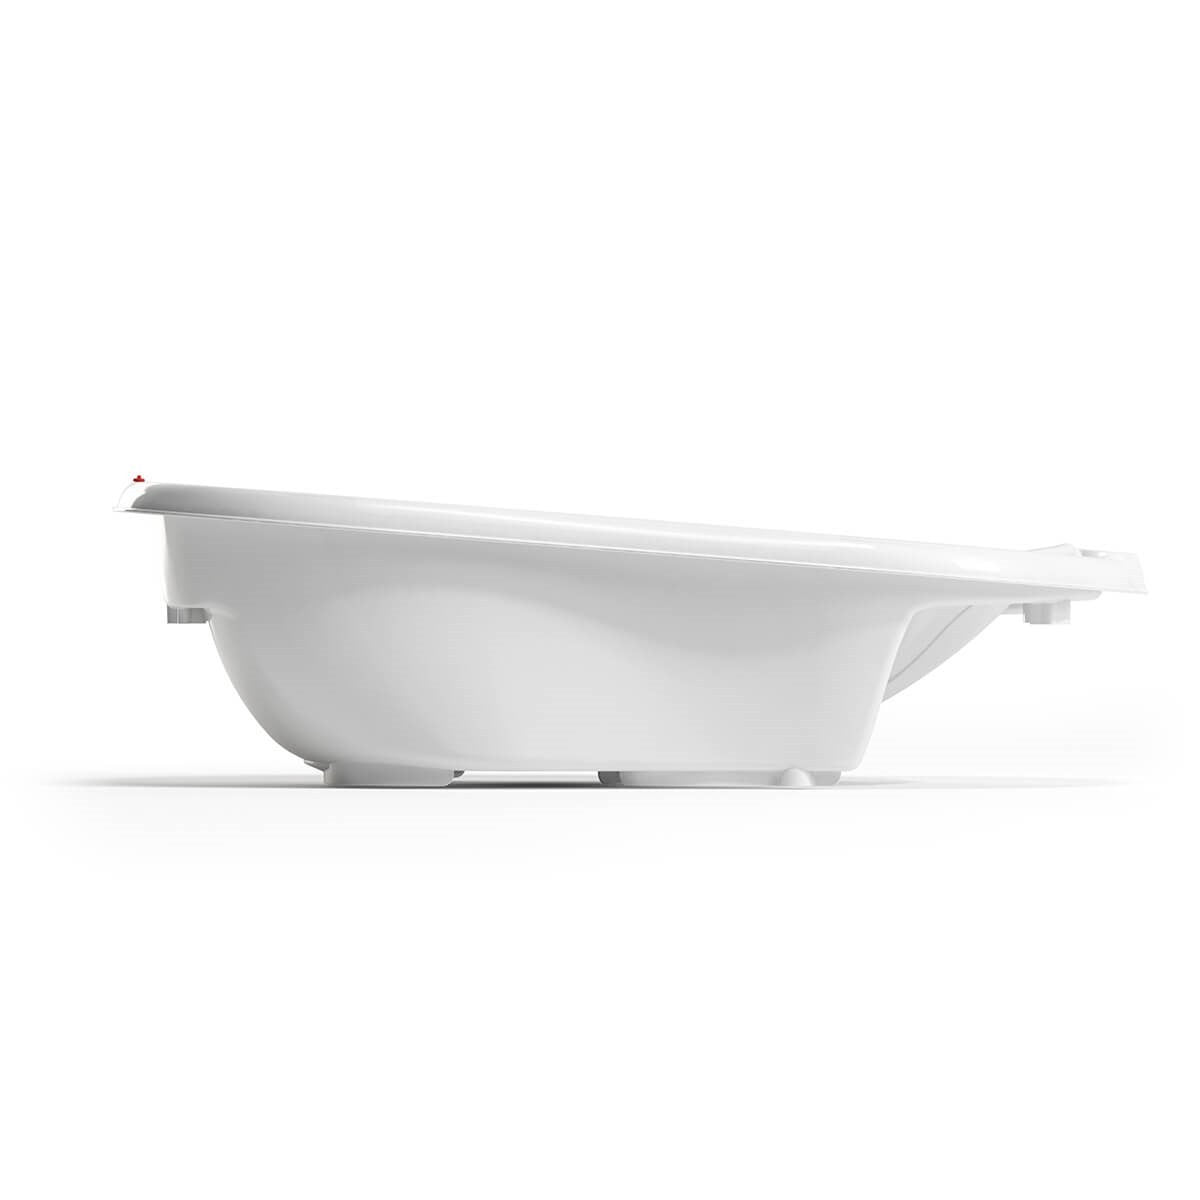 OkBaby Onda Banyo Küveti & Küvet Taşıyıcı Beyaz / Banyo Güvenlik Seti Hediye